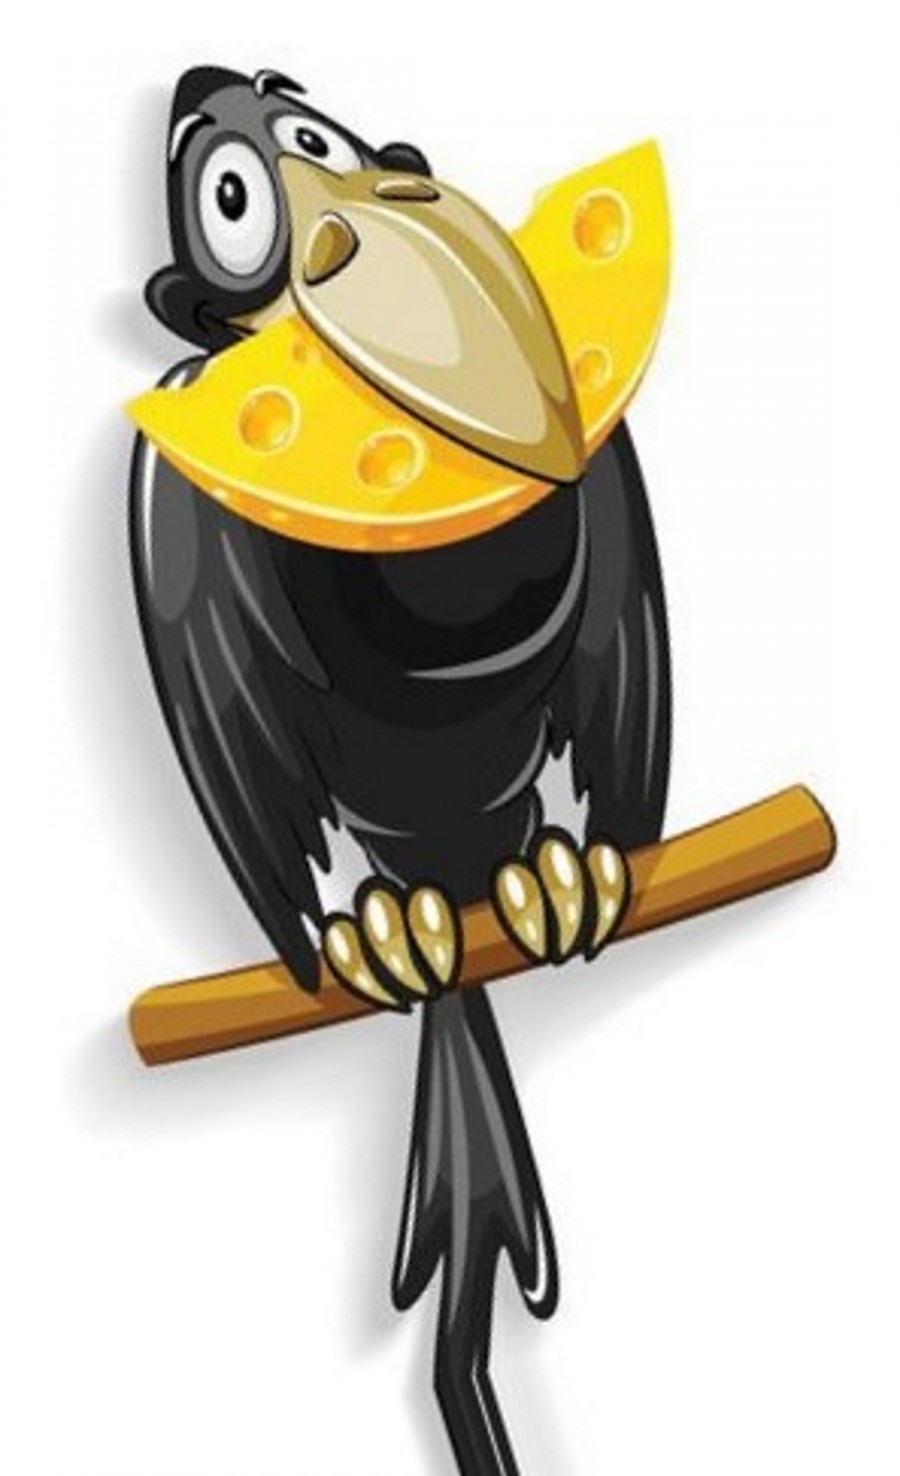 Ворона с большим куском сыра в клюве - картинка №10412